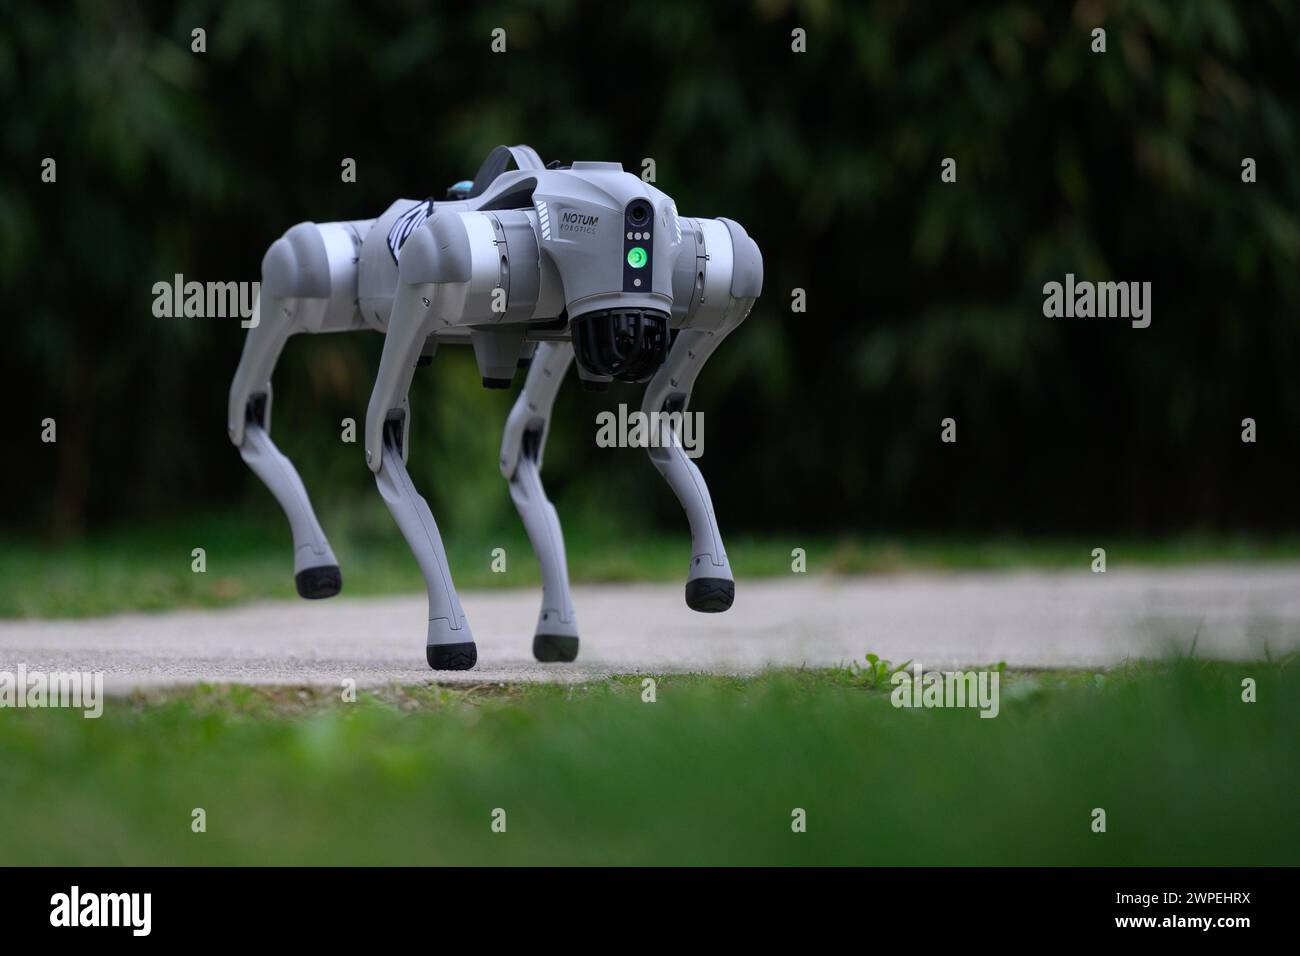 Der Roboterhund Milan Rajcevic, Inhaber und Direktor der Firma Notum Robotics, ging durch den Park von Dr. Franjo Tudjman in Velika Gorica. Passanten und ihre Hunde interessierten sich gleichermaßen für den Roboter. Der Roboterhund ist ein kommerzielles Produkt, das auf Bestellung hergestellt wird, und was interessant und einzigartig daran ist, sind die Softwarelösungen. Es geht darum, dass diese Plattform autonom ist, ohne menschliches Eingreifen und mit minimaler Wartung, um Aufgaben gemäß ihrem Programm auszuführen, unter unbekannten Umständen auf unbekanntem Gelände zu navigieren. Die Anwendungen sind vom Sicherheits-ap aus unbegrenzt Stockfoto